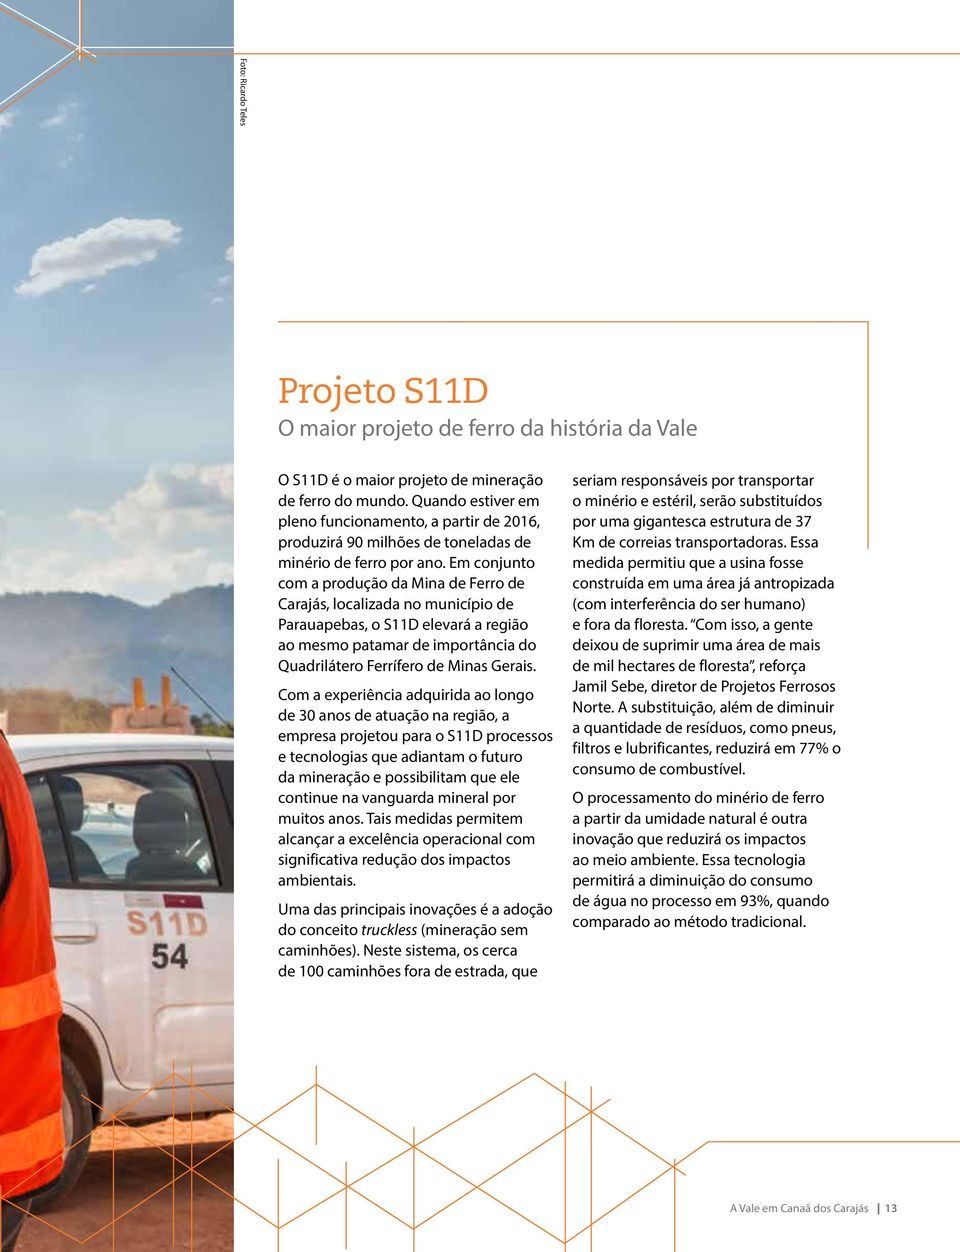 Em conjunto com a produção da Mina de Ferro de Carajás, localizada no município de Parauapebas, o S11D elevará a região ao mesmo patamar de importância do Quadrilátero Ferrífero de Minas Gerais.